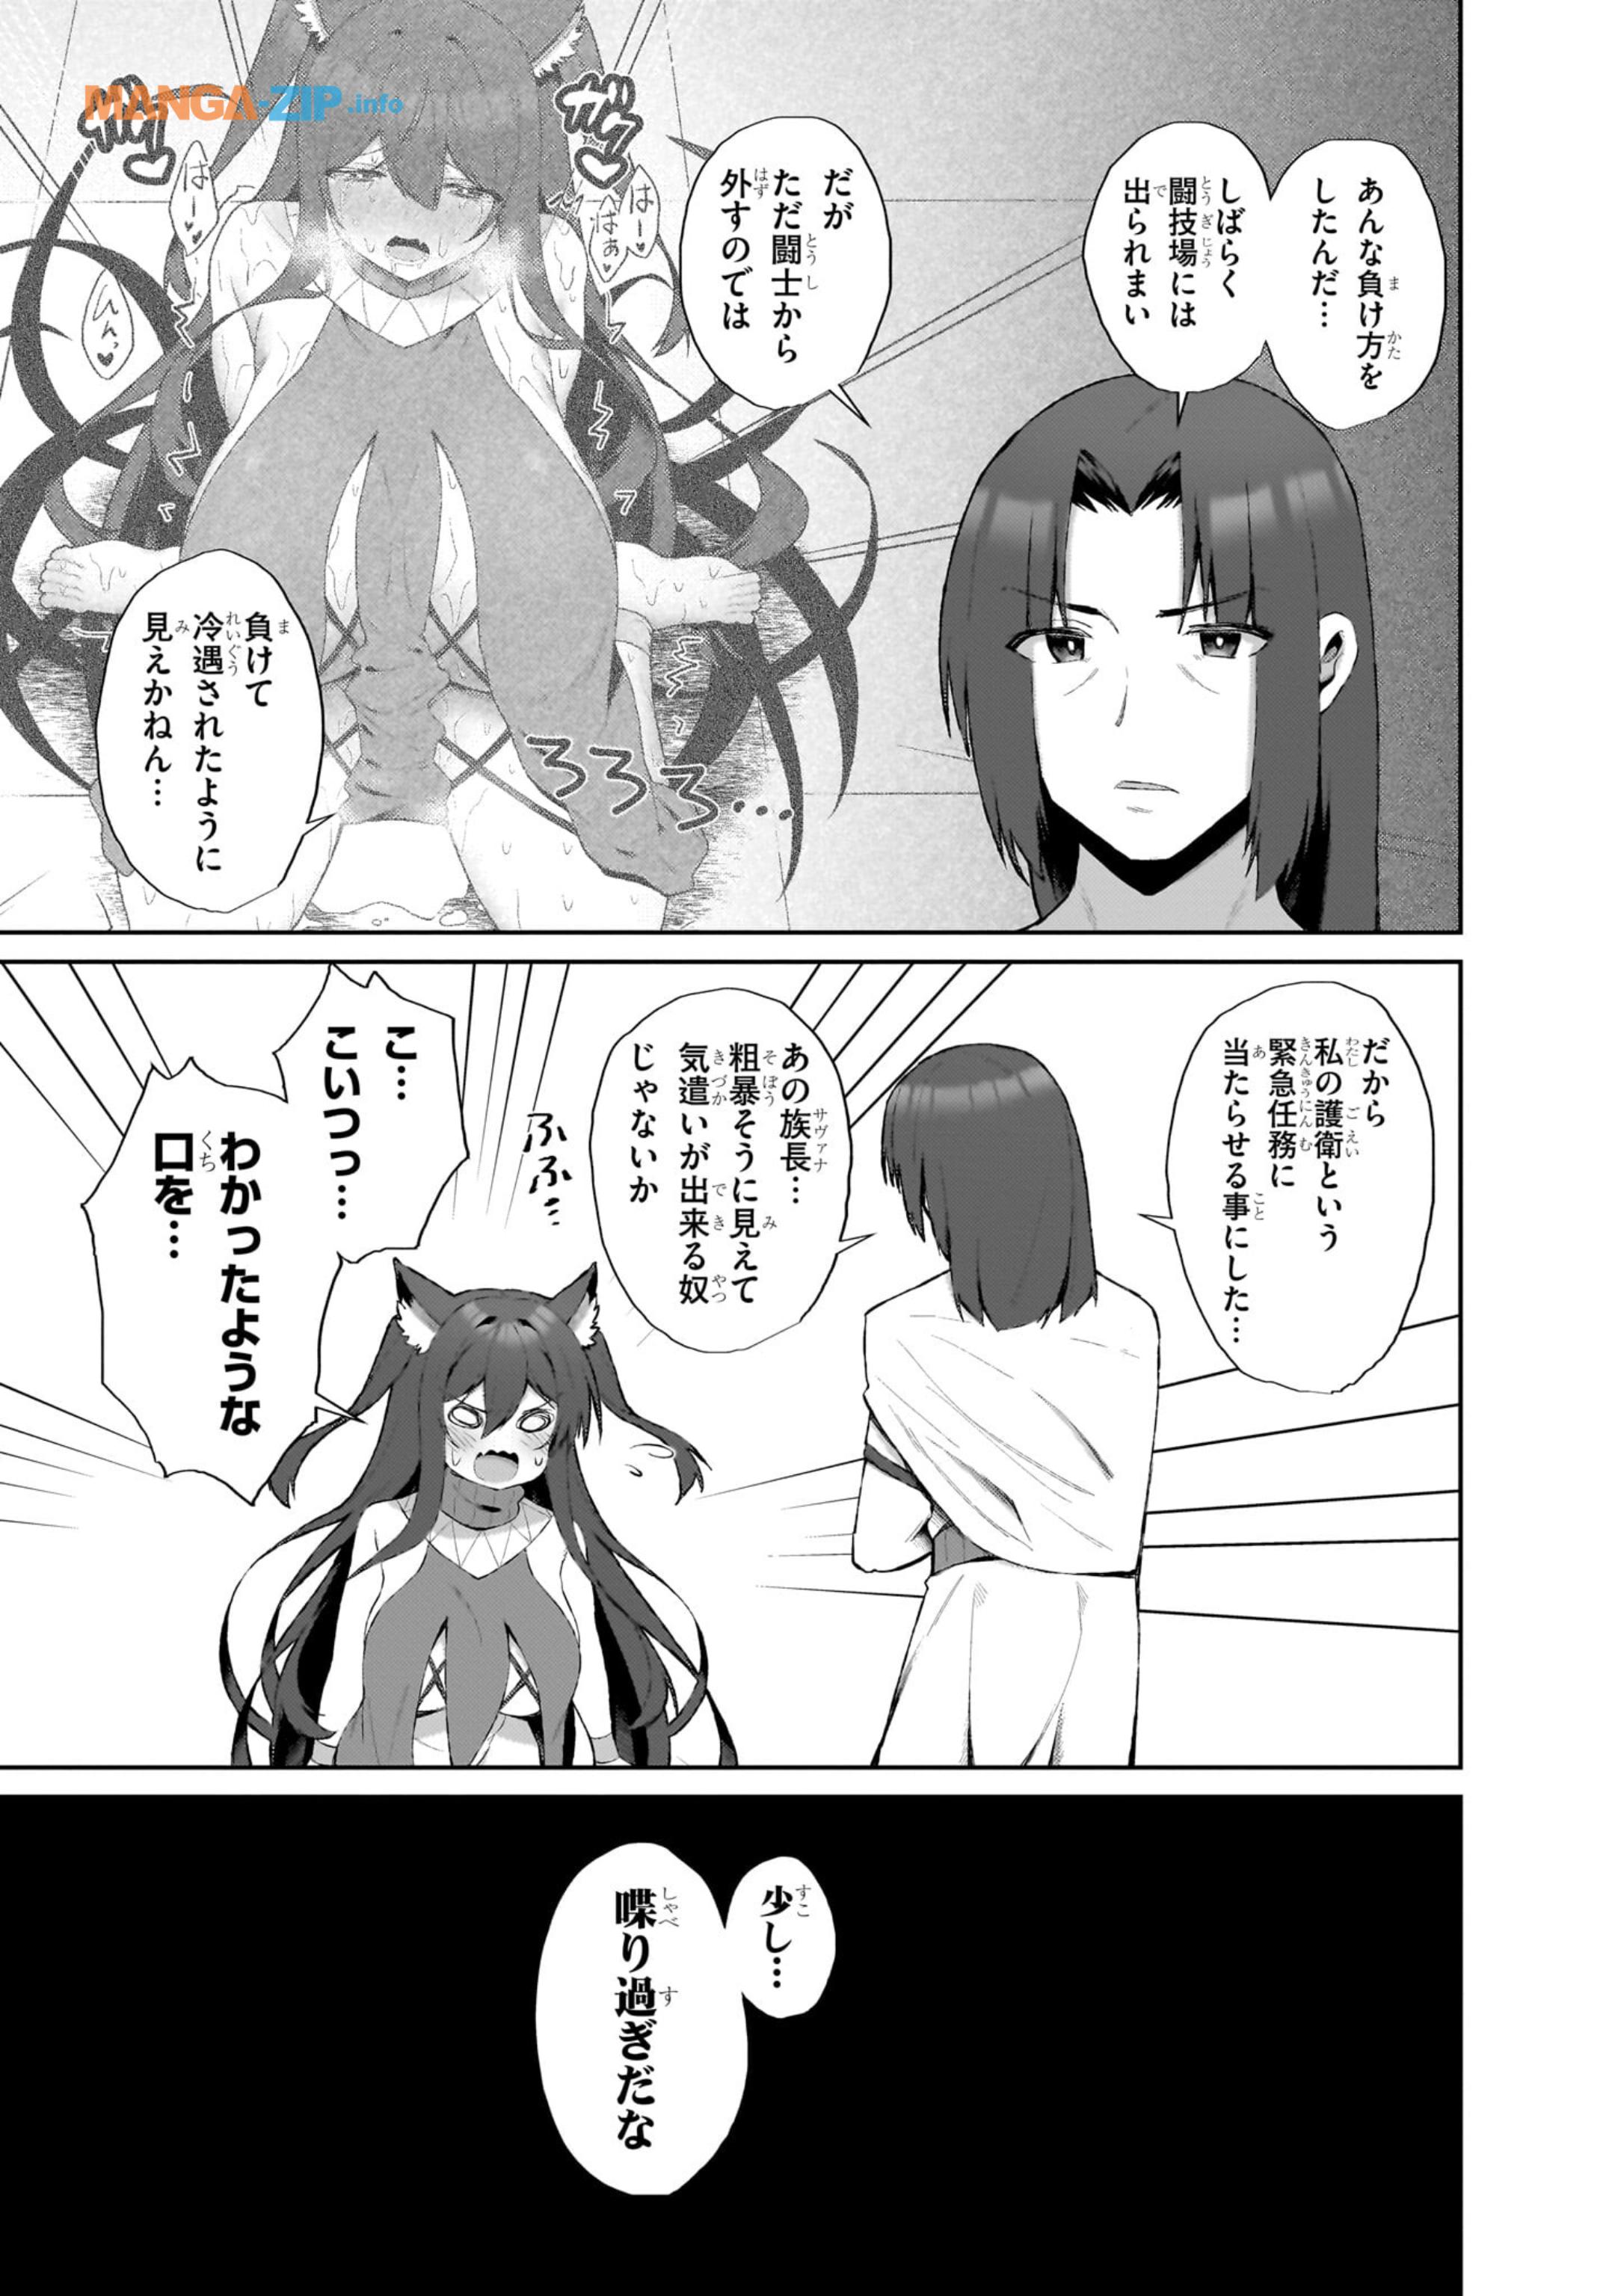 Nogaku Hakase no Isekai Muso Kinki no Chishiki de Kizuku Monster Musume Harem - Chapter 2.2 - Page 7